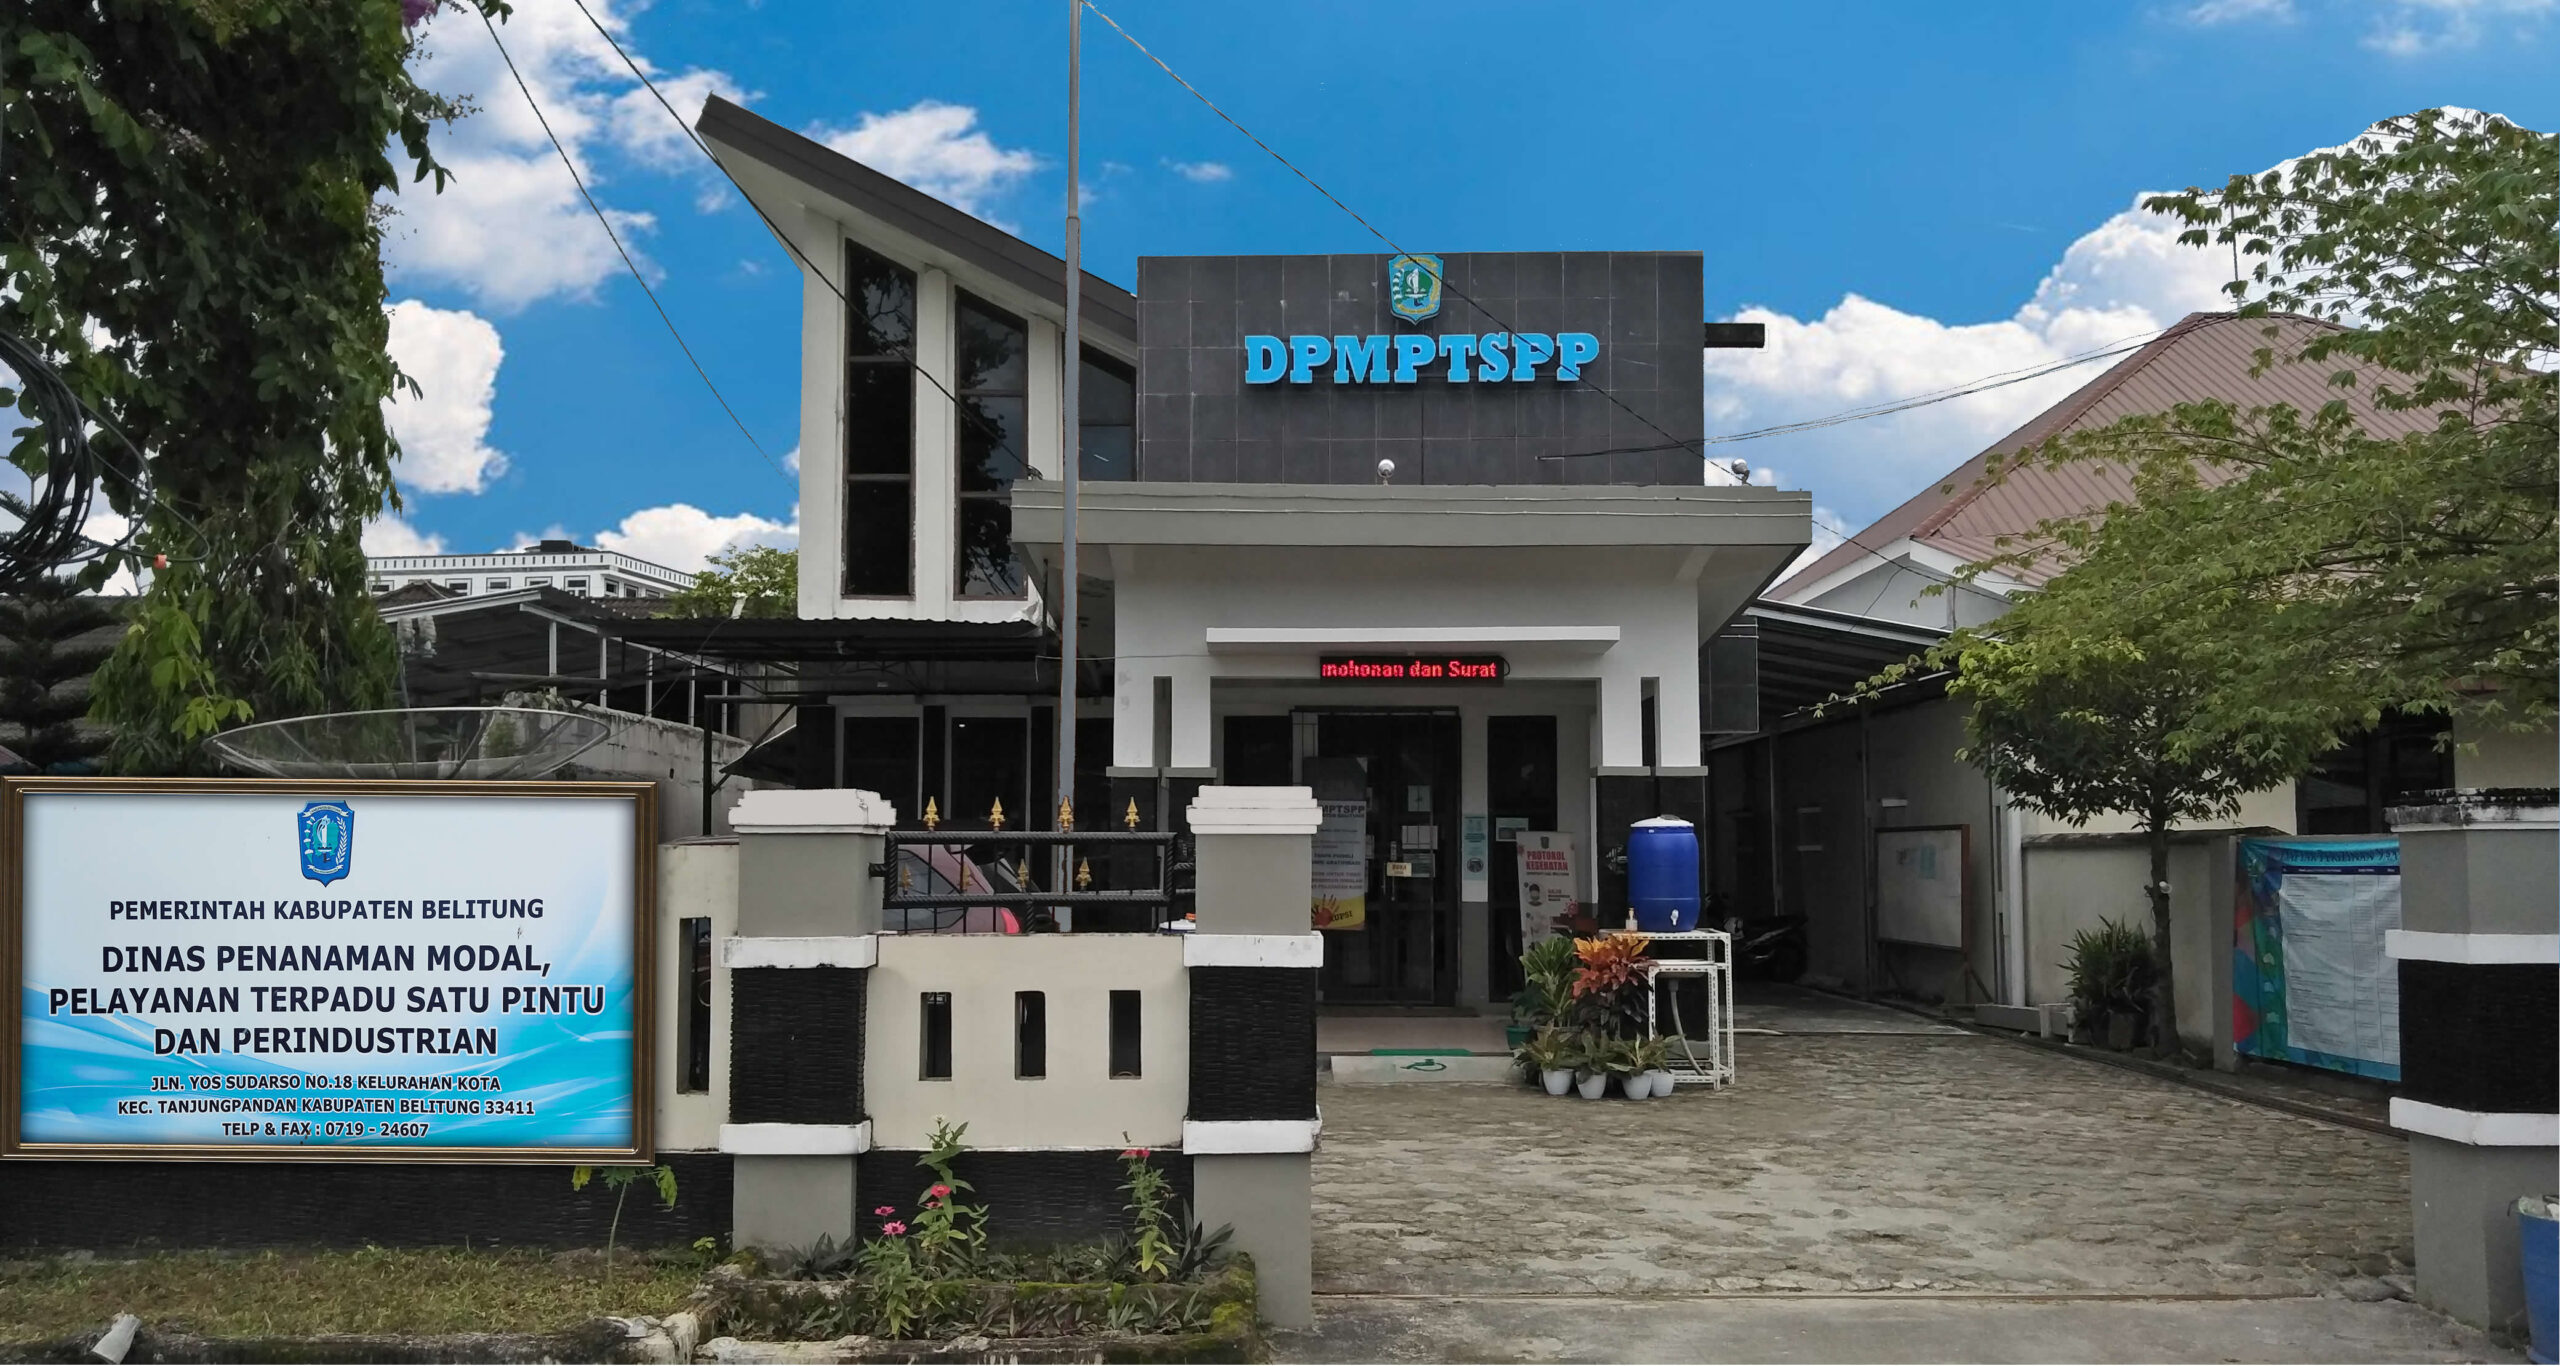 DPMPTSPP Kabupaten Belitung